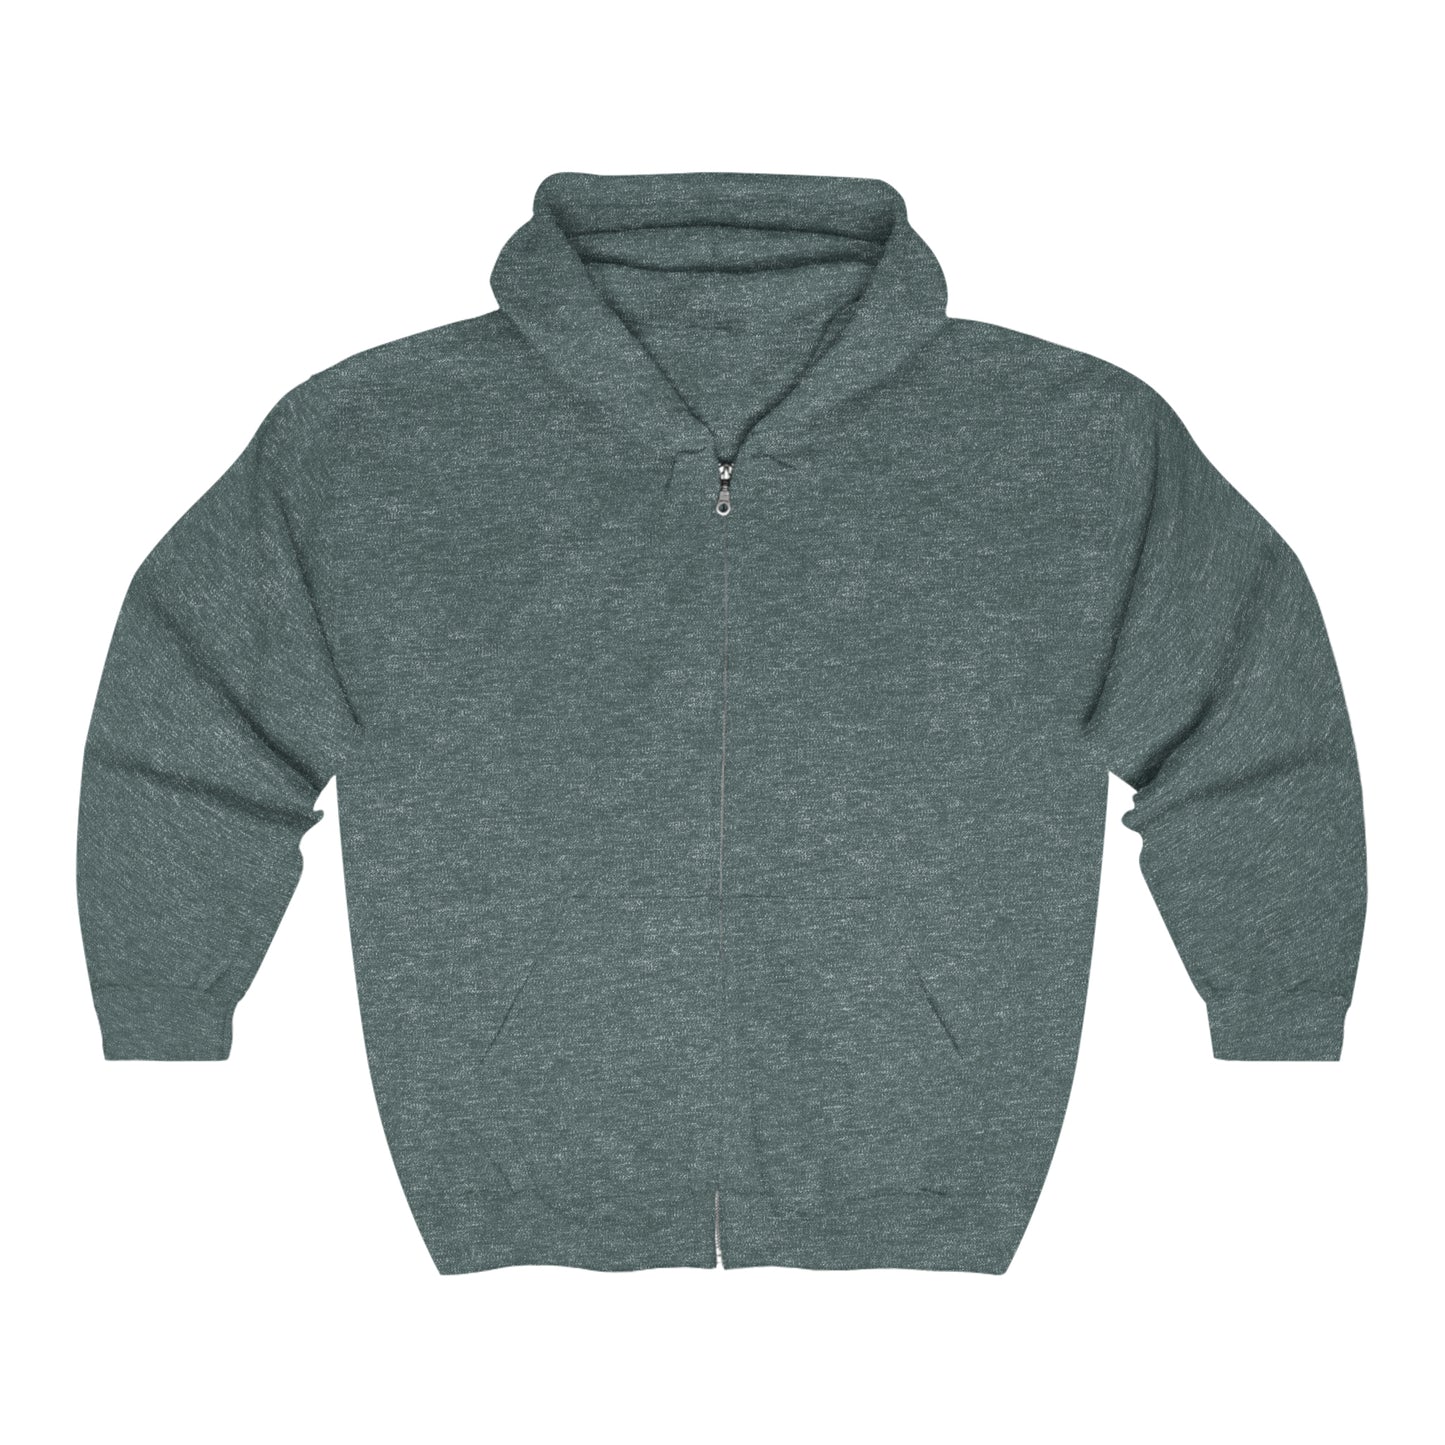 Other Delights - Unisex Heavy Blend™ Full Zip Hooded Sweatshirt